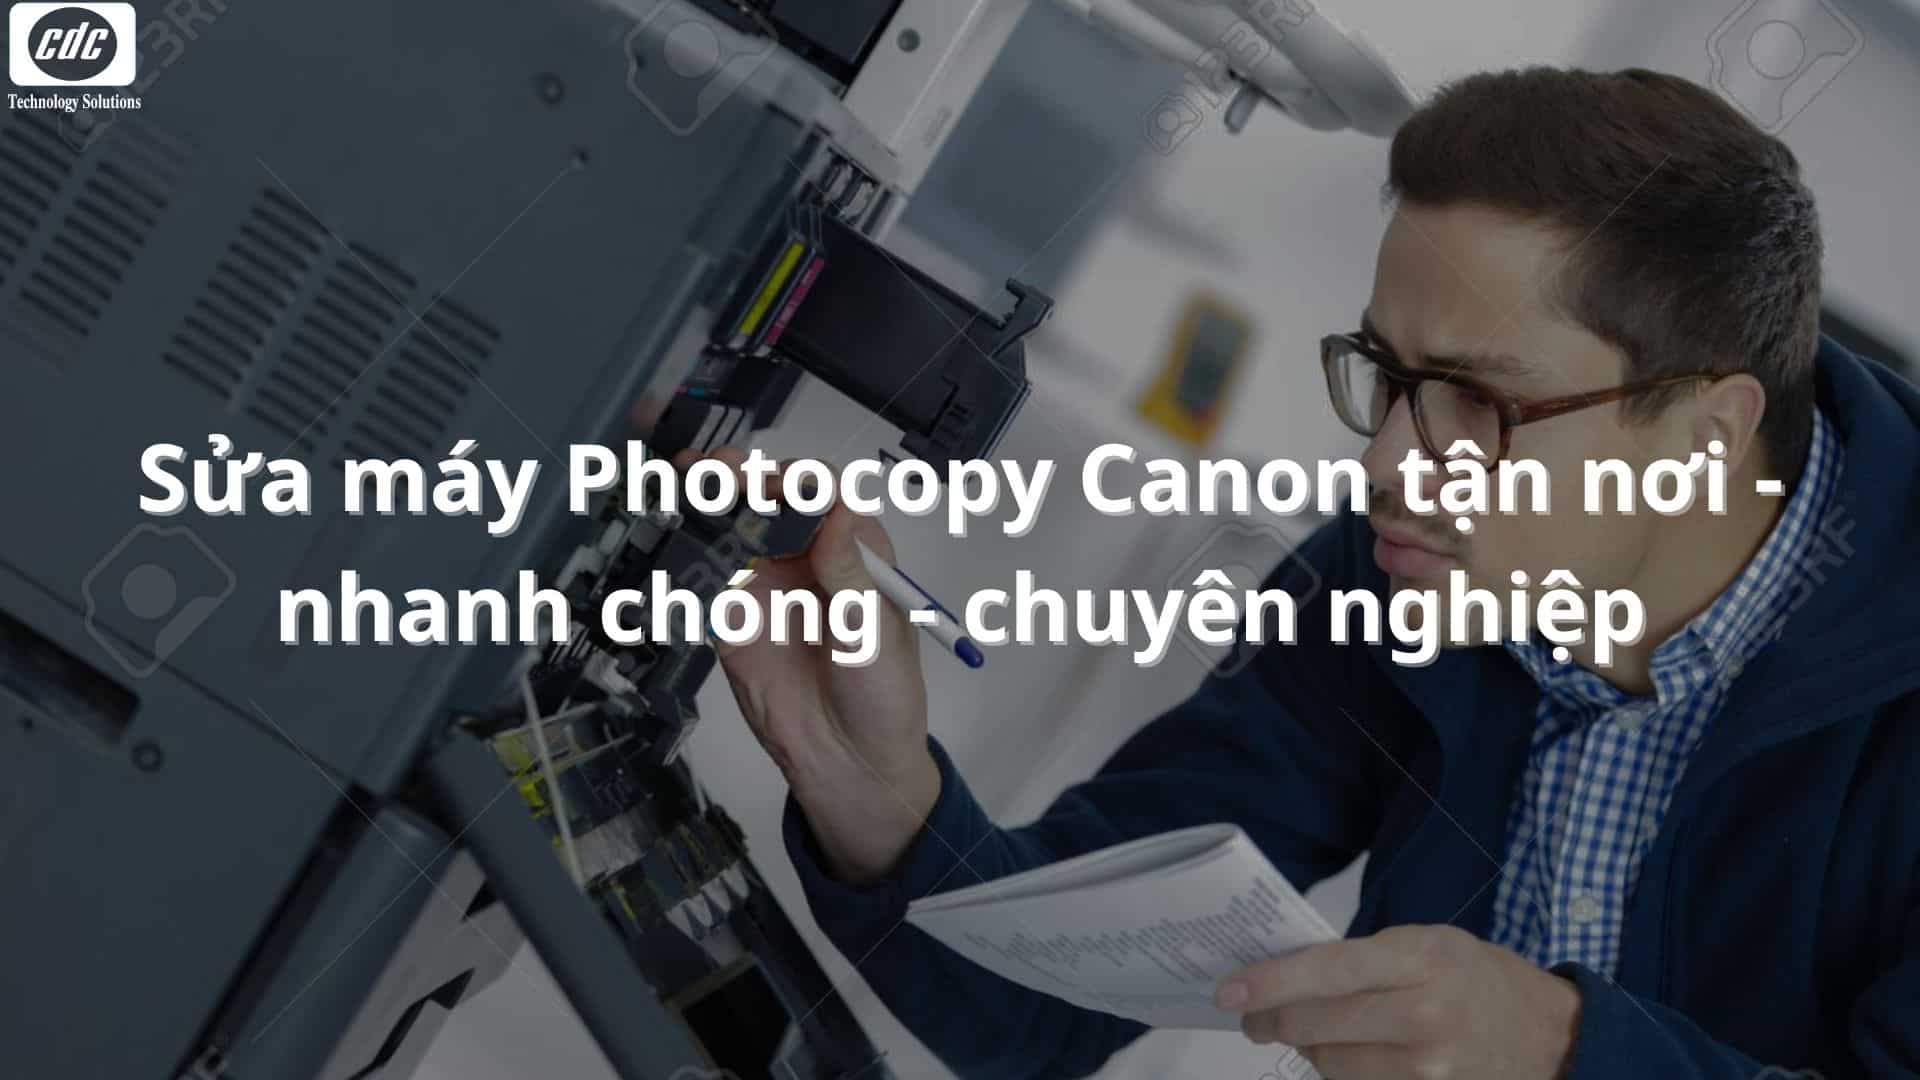 Sửa máy Photocopy Canon tận nơi - nhanh chóng - chuyên nghiệp